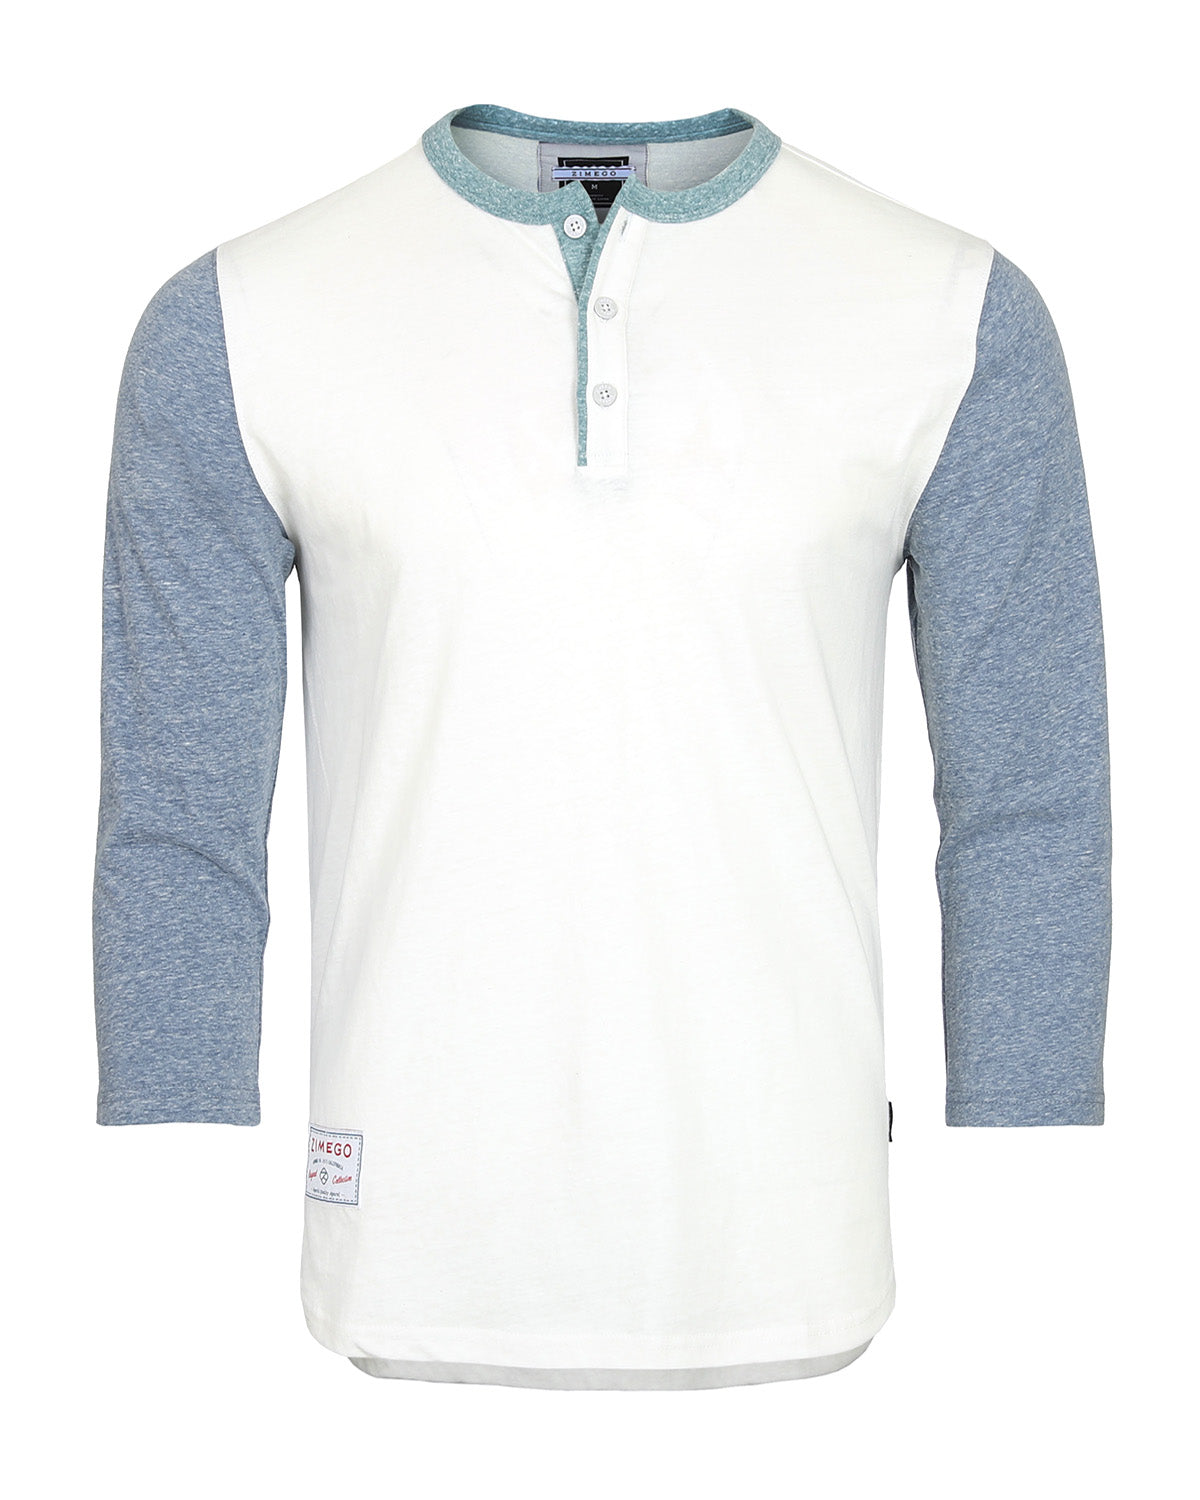 Zimego Men's 3/4 Sleeve Baseball Retro Henley – Casual Athletic Button Crewneck Shirts Large / White / Navy